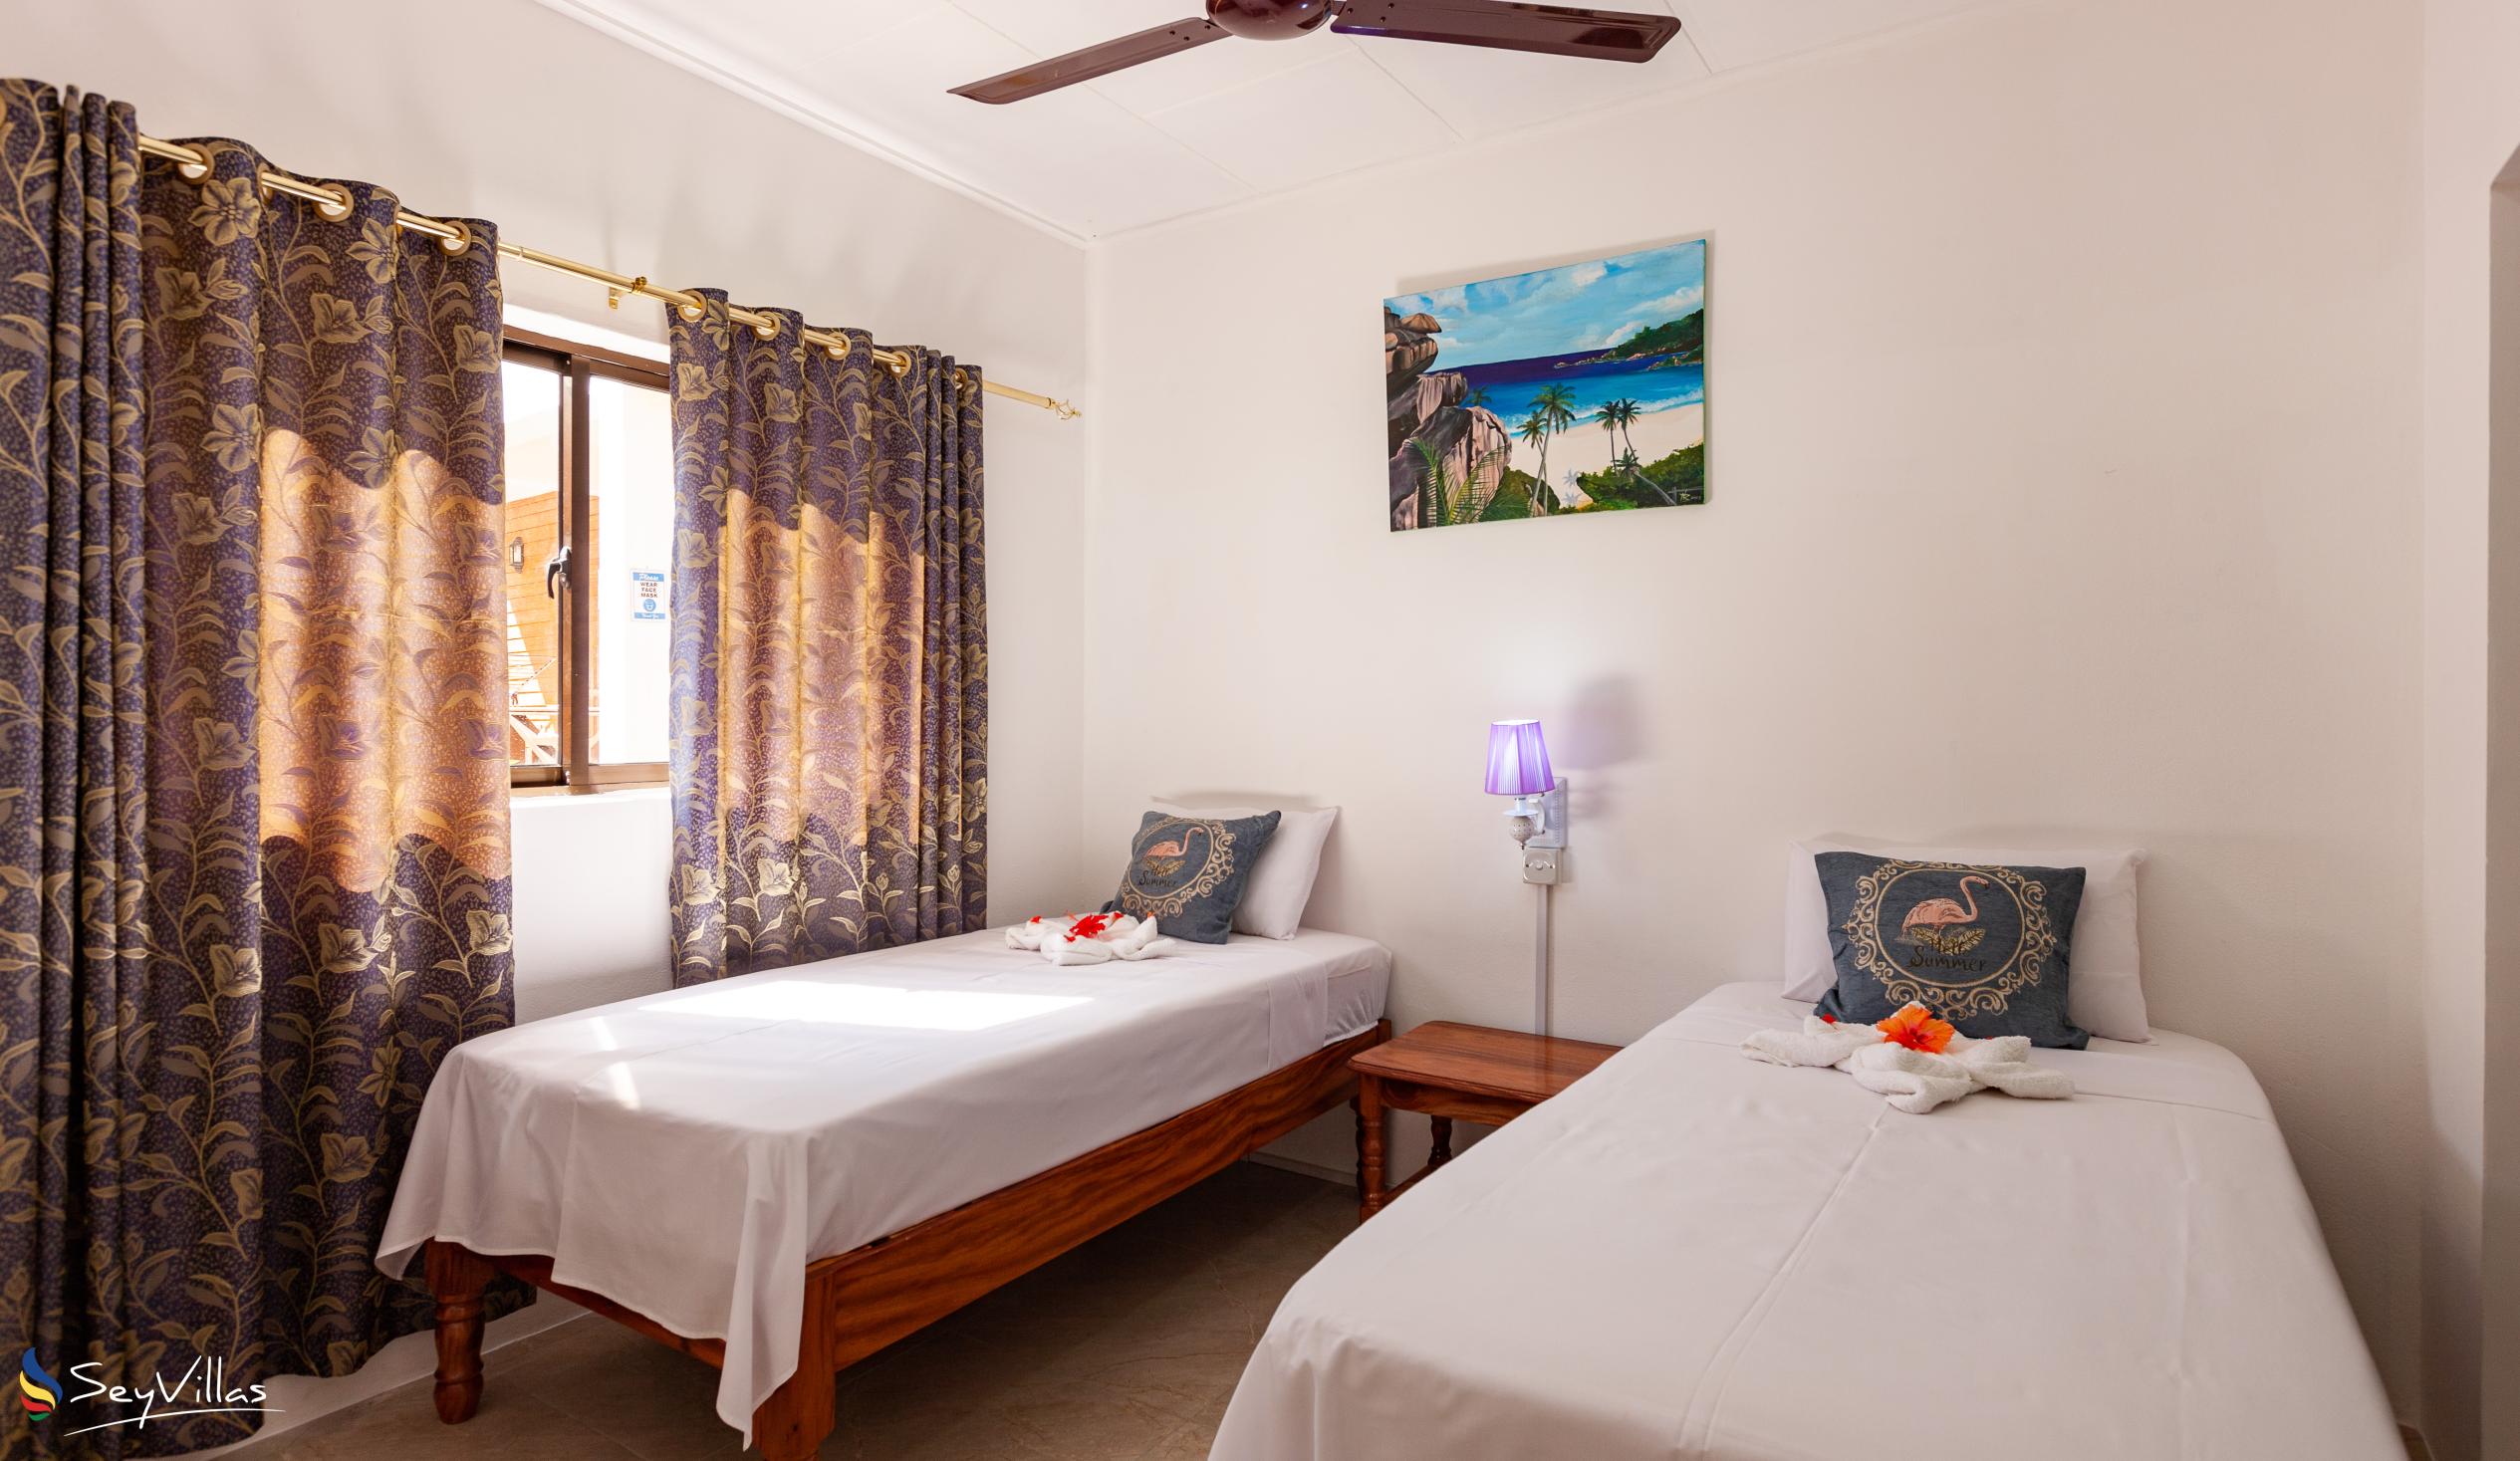 Foto 55: Anse Grosse Roche Beach Villa - Appartamento Familiare con 2 camere da letto - La Digue (Seychelles)